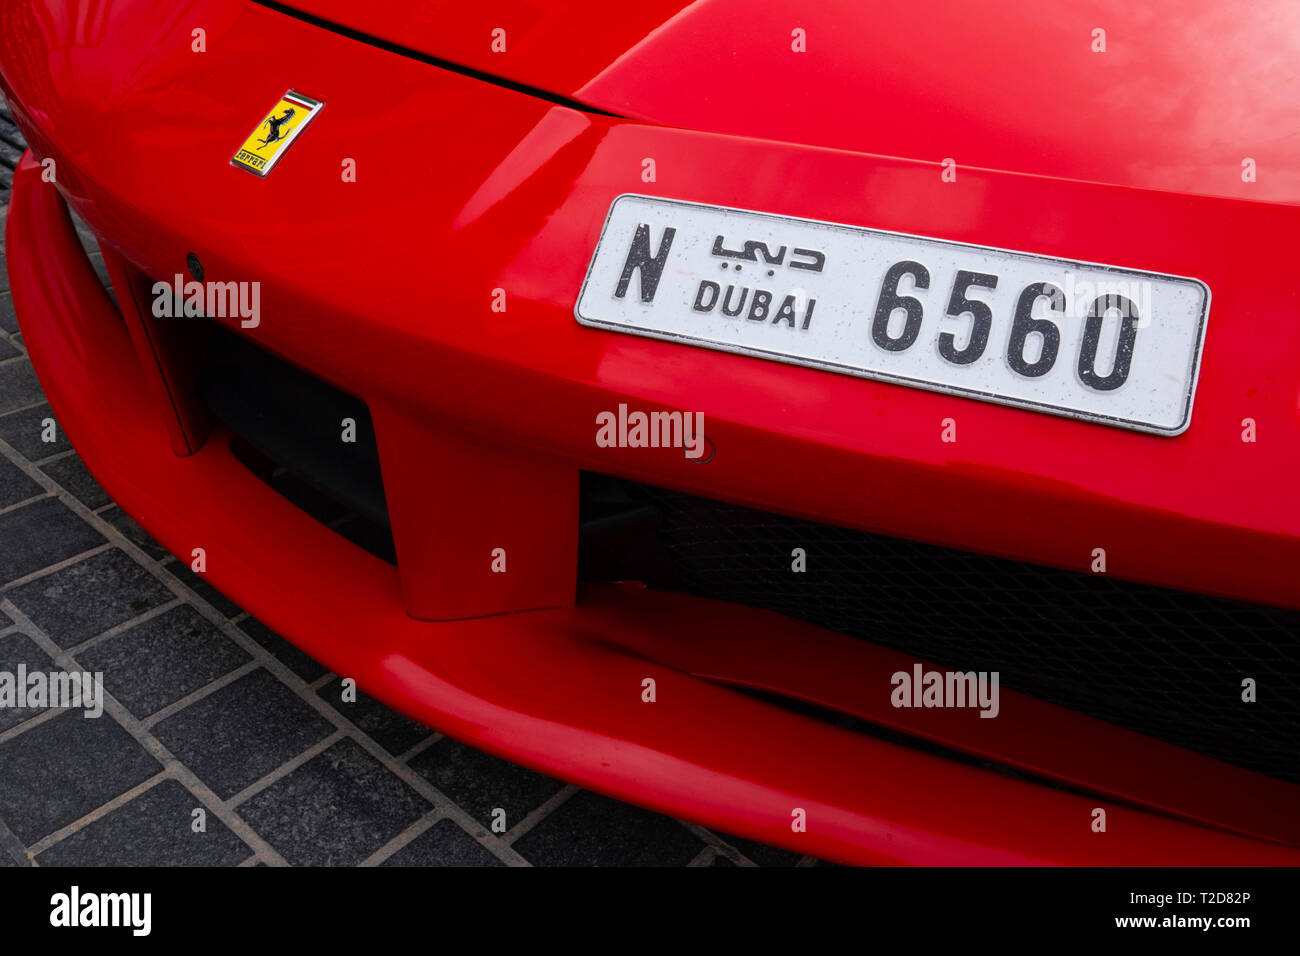 Vorderansicht eines roten Ferrari Supersportwagen mit einem Dubai Nummernschild Stockfoto